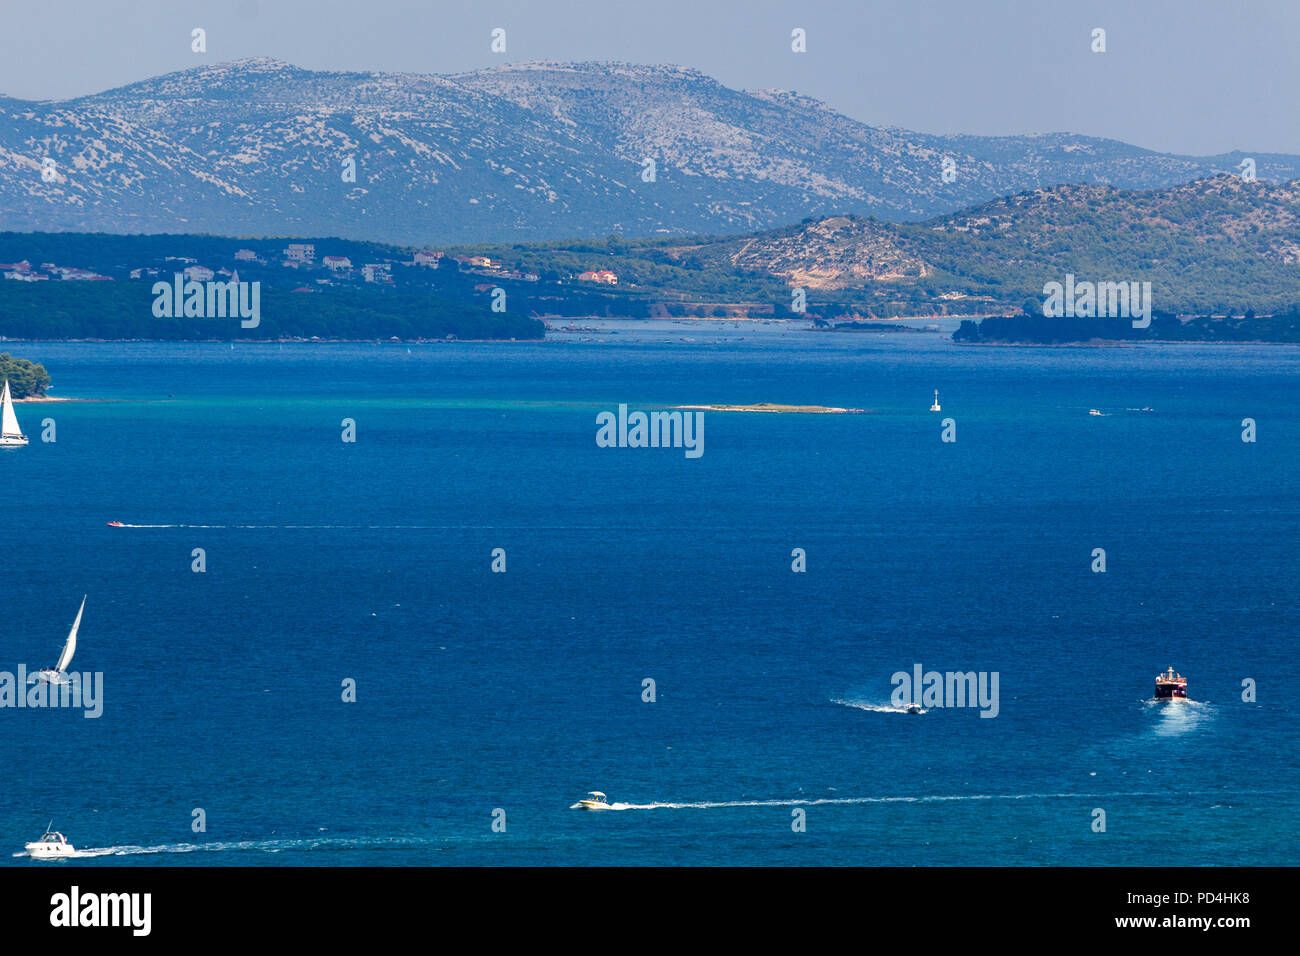 Zadar, Croatie - Juillet 24, 2018 : vue panoramique de la côte croate et région de Zadar à partir de l'île de Pasman Banque D'Images